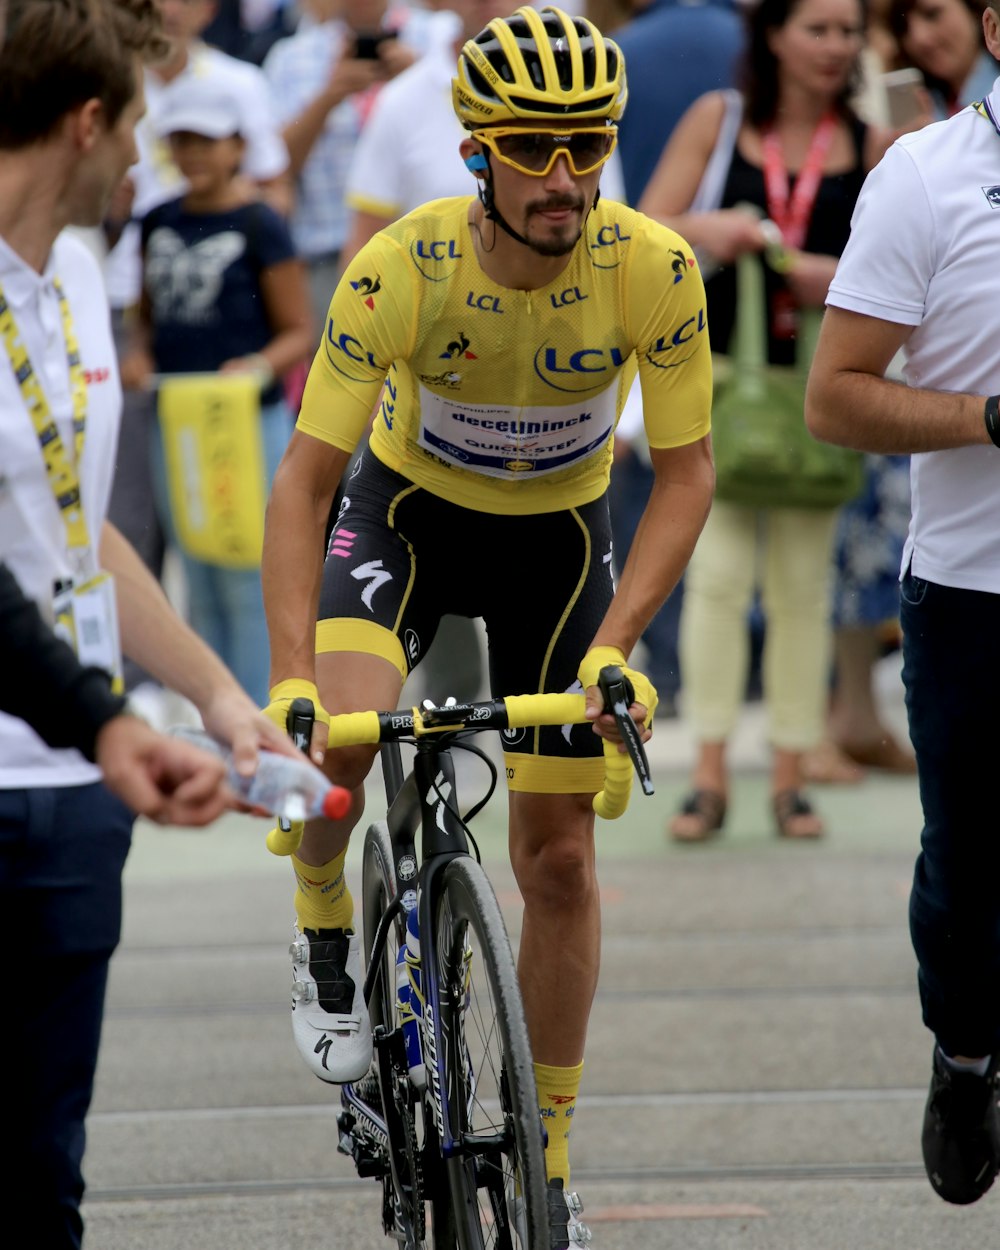 man in yellow shirt riding road bike